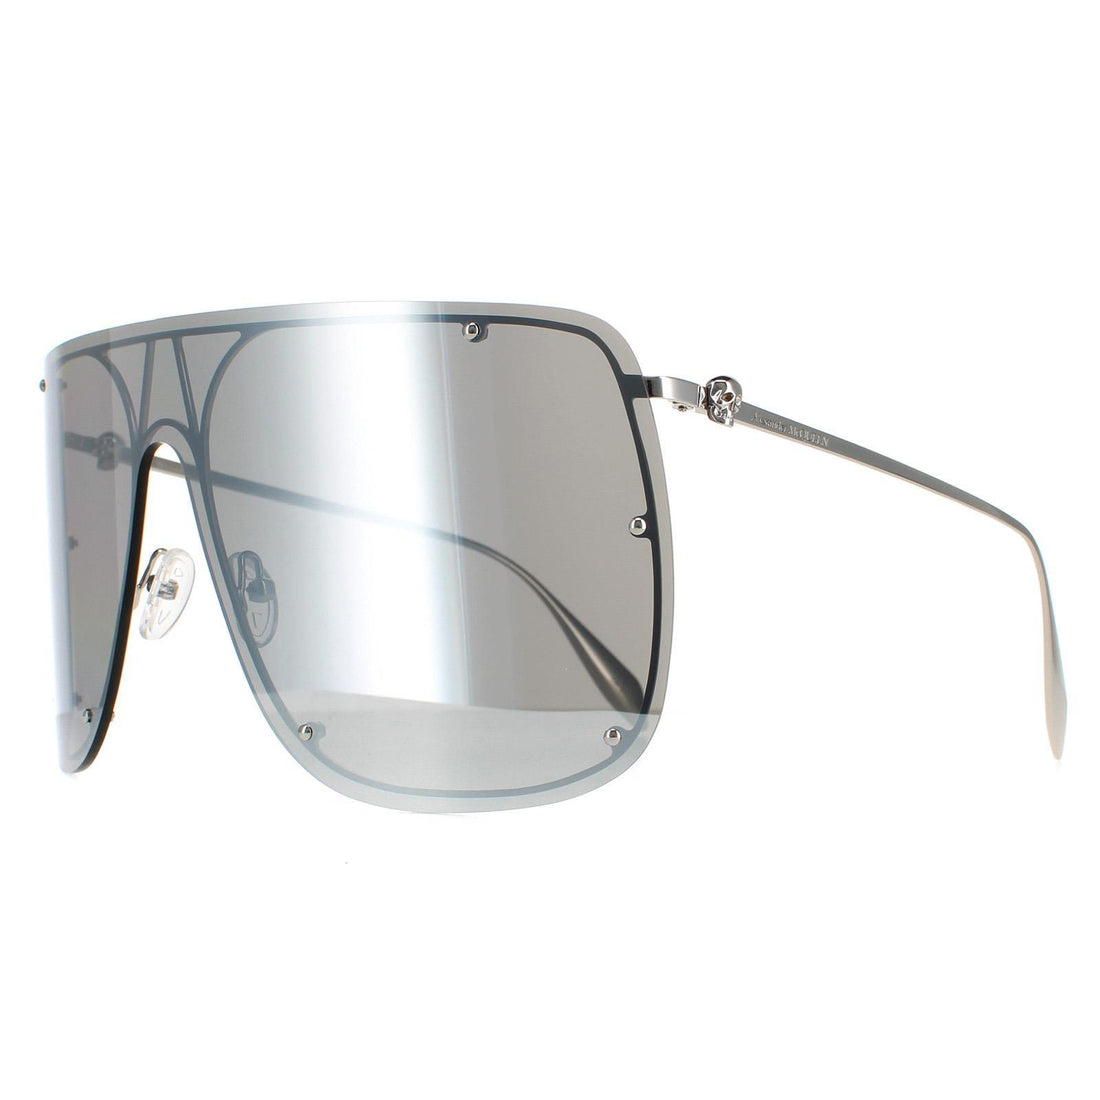 Alexander McQueen AM0313S Sunglasses